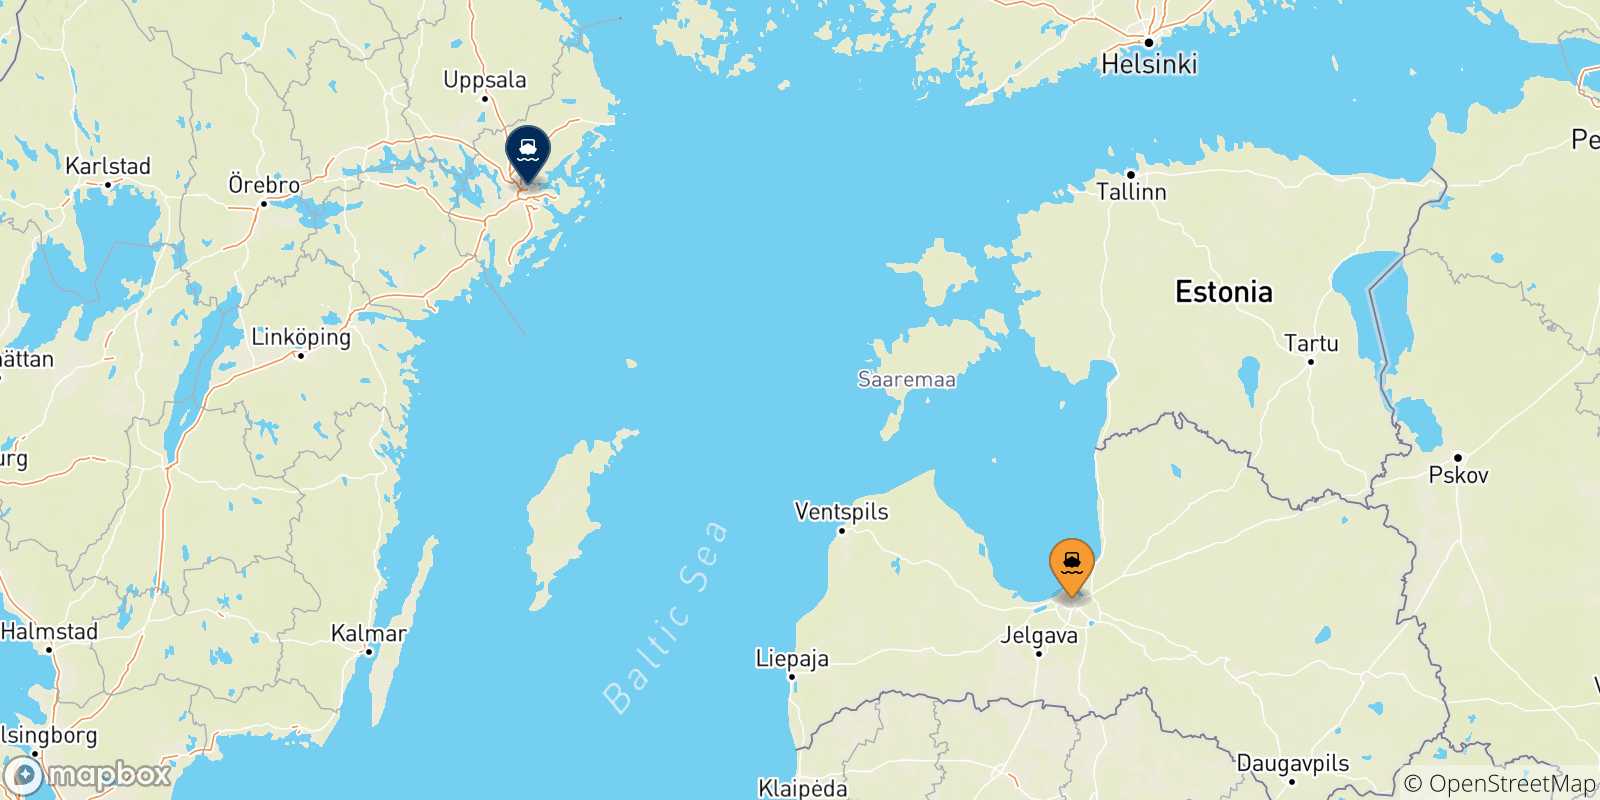 Mappa delle possibili rotte tra Riga e la Svezia